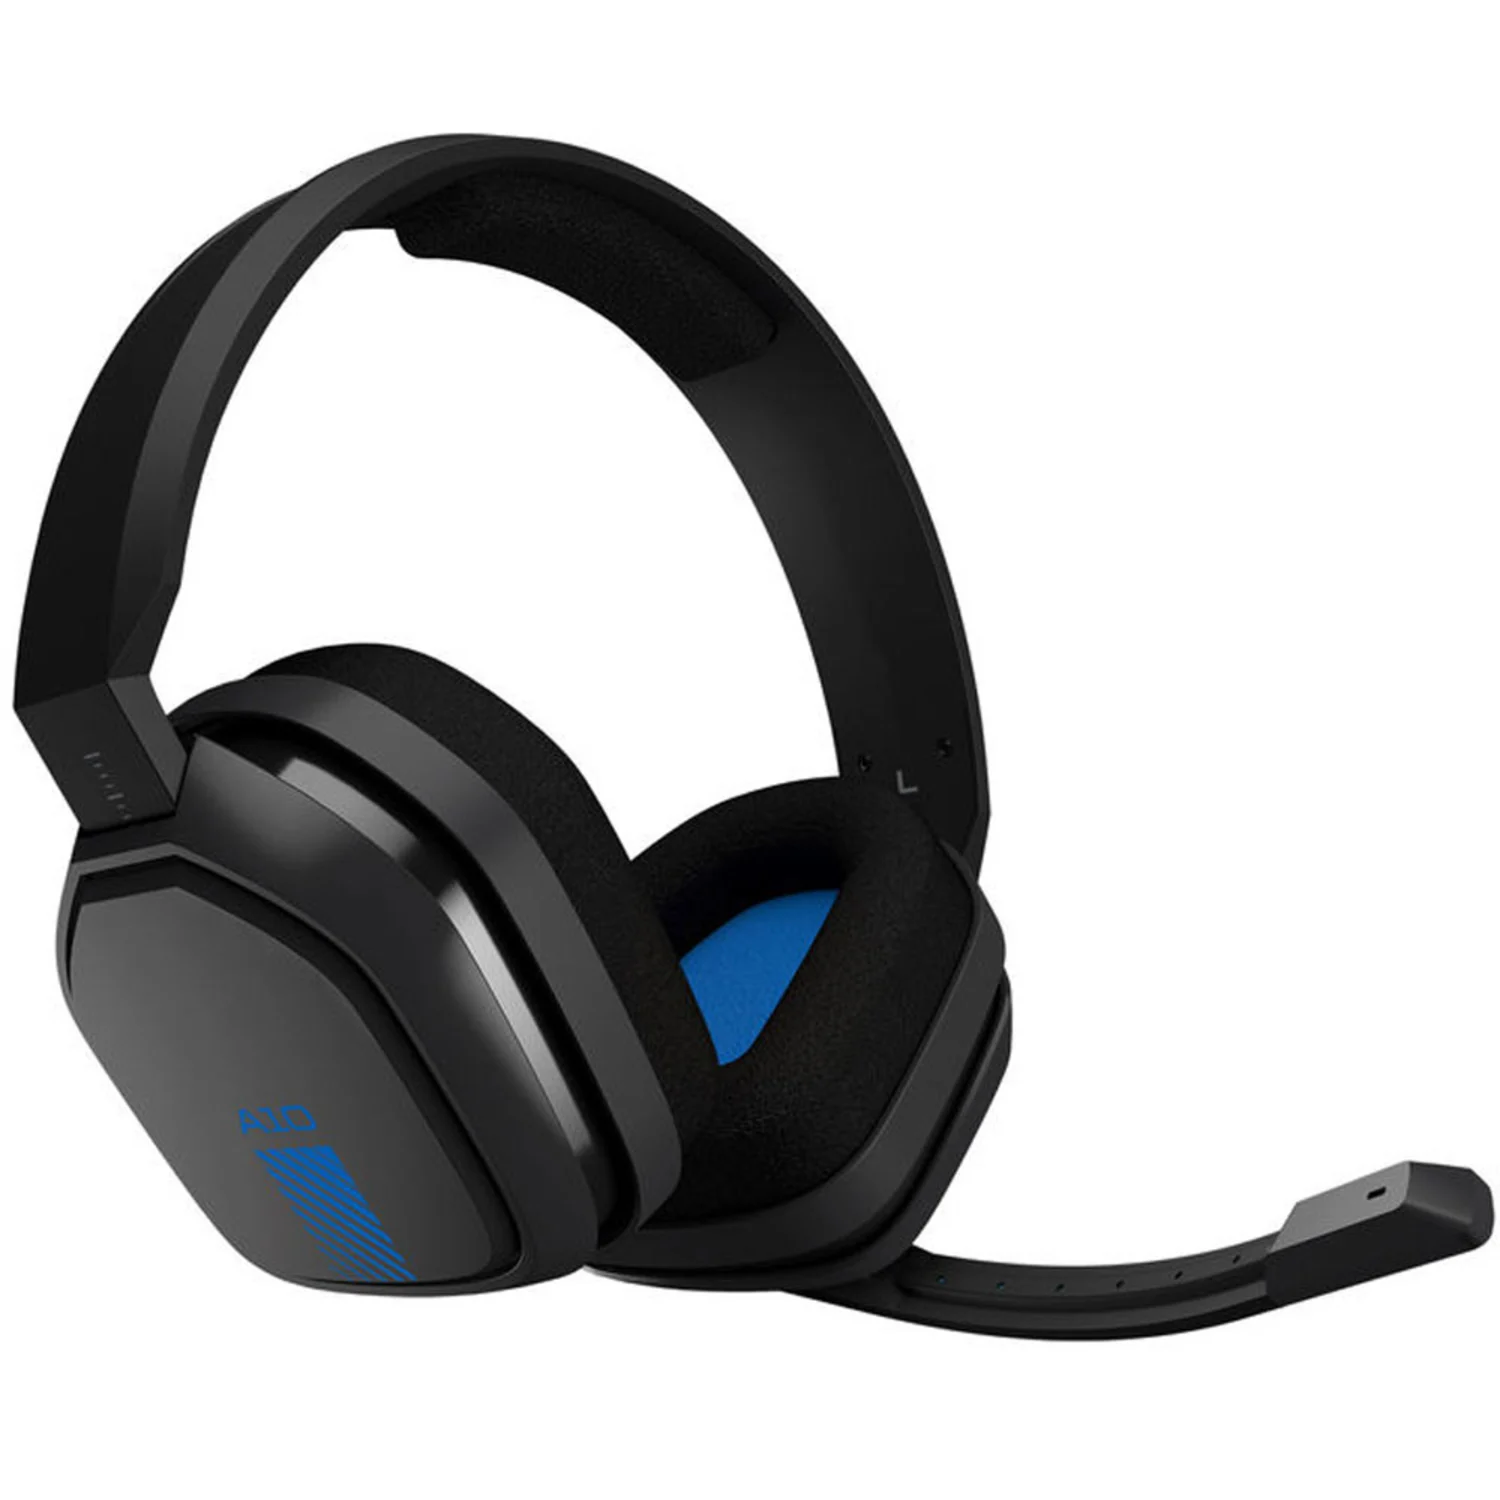 Headset Logitech Astro A10 Gaming para PS4 - Cinza e Azul (939-001594)